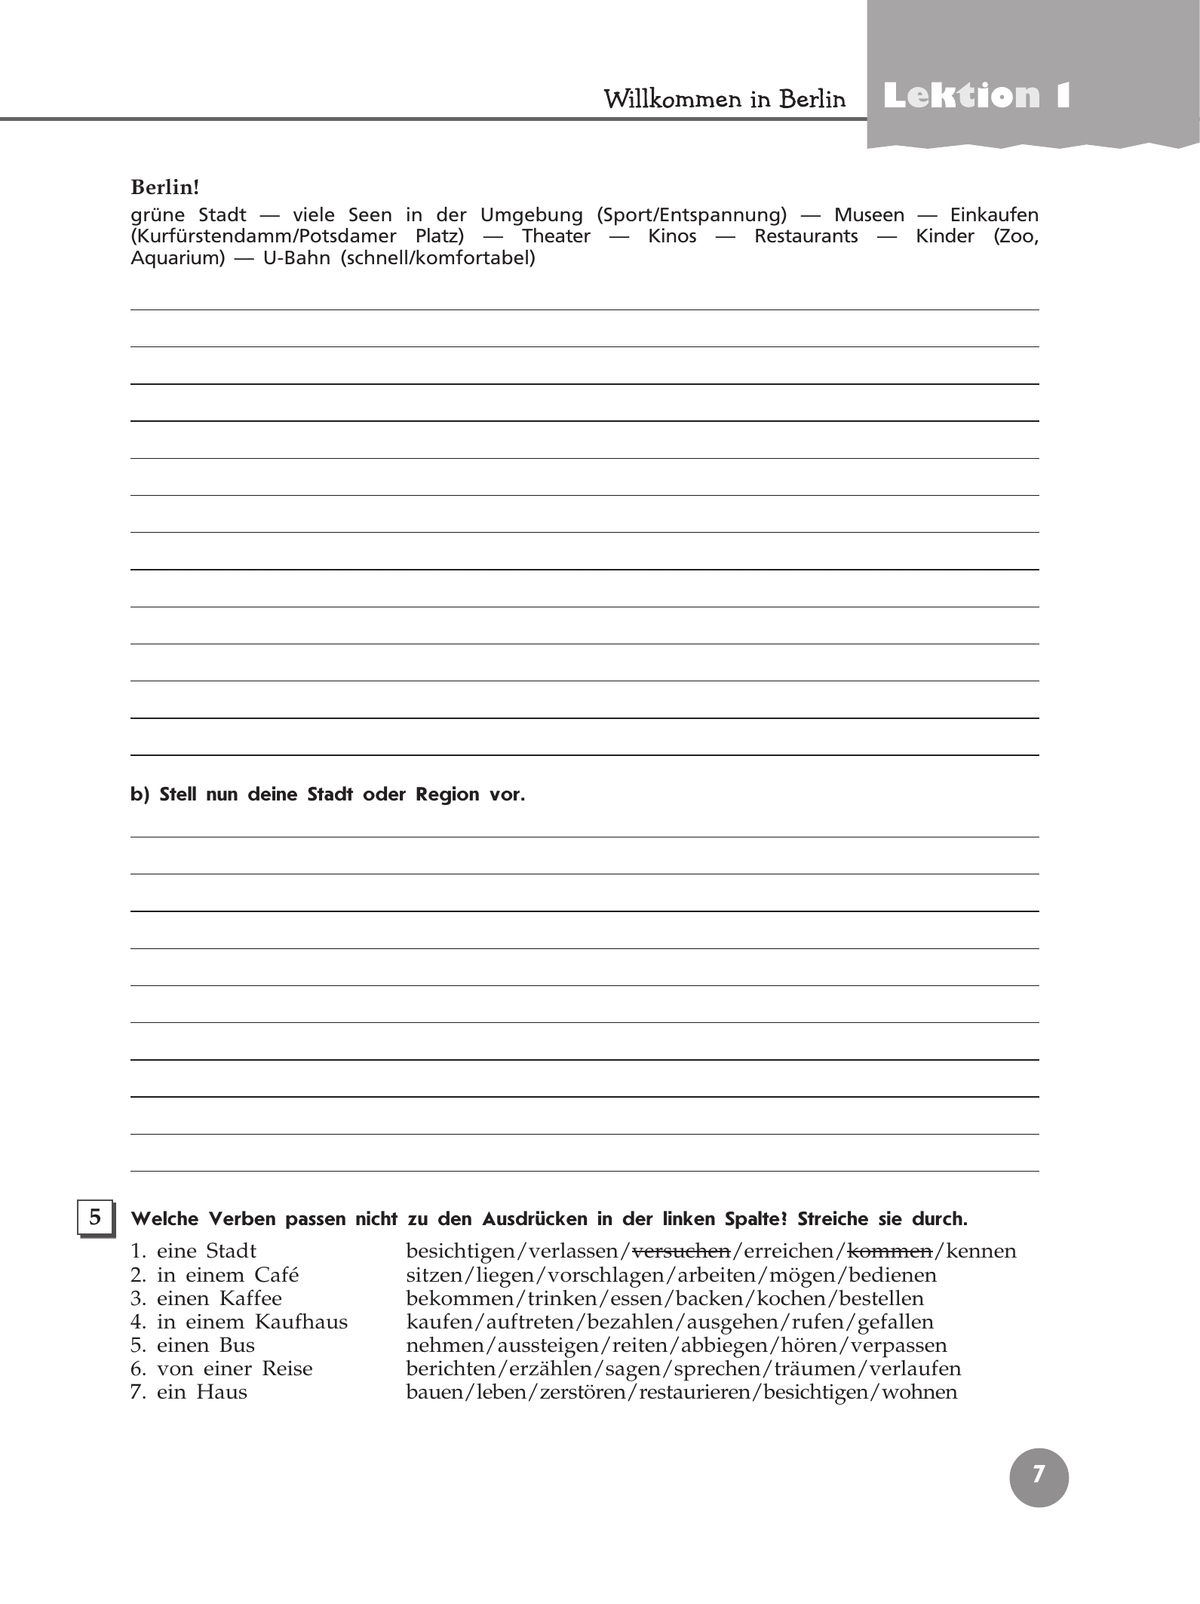 Немецкий язык. Рабочая тетрадь. 9 класс 8